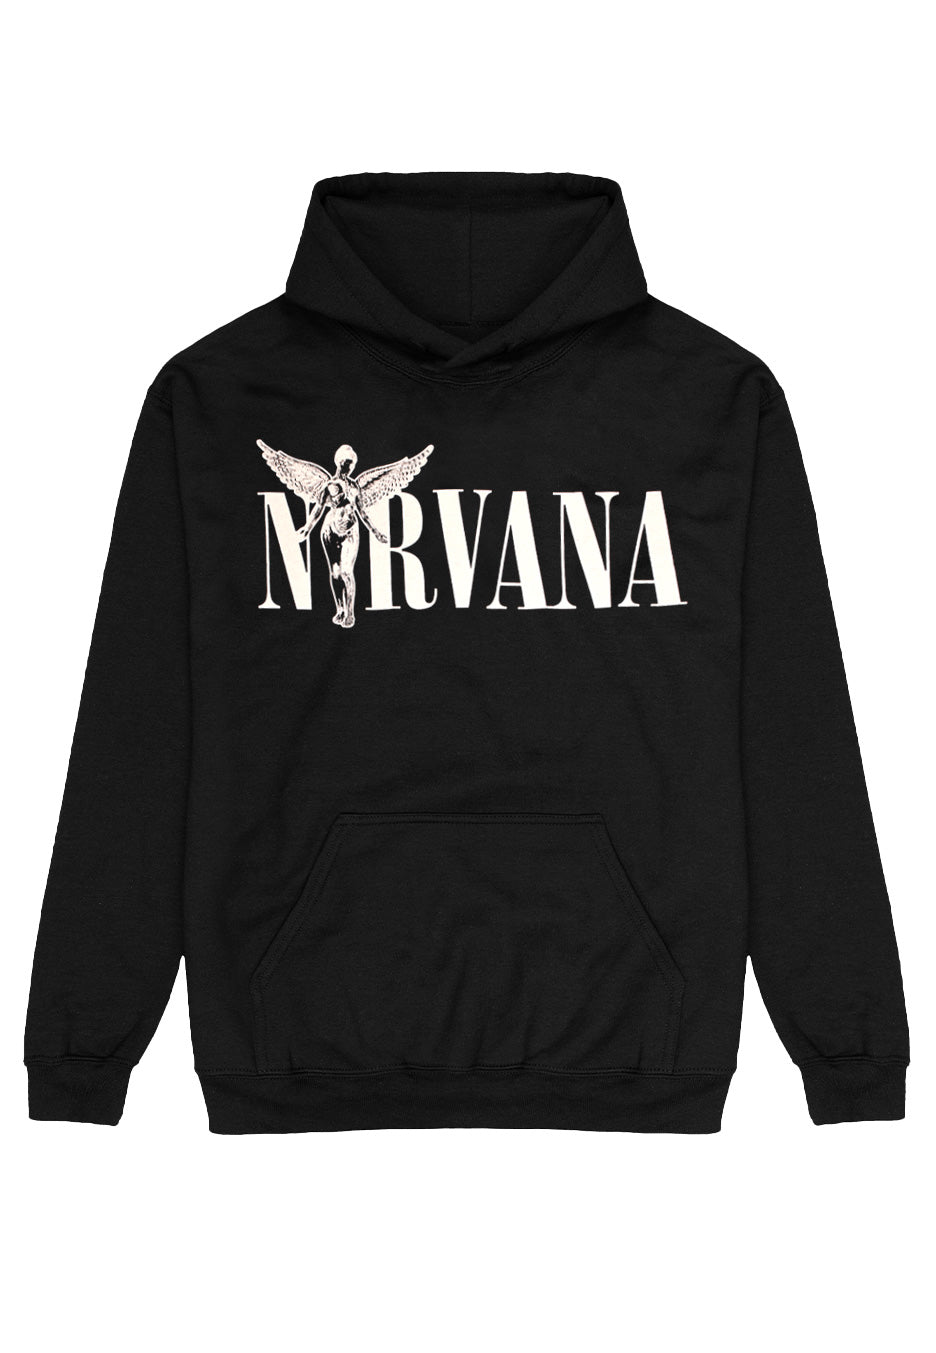 Nirvana - In Utero Title - Hoodie